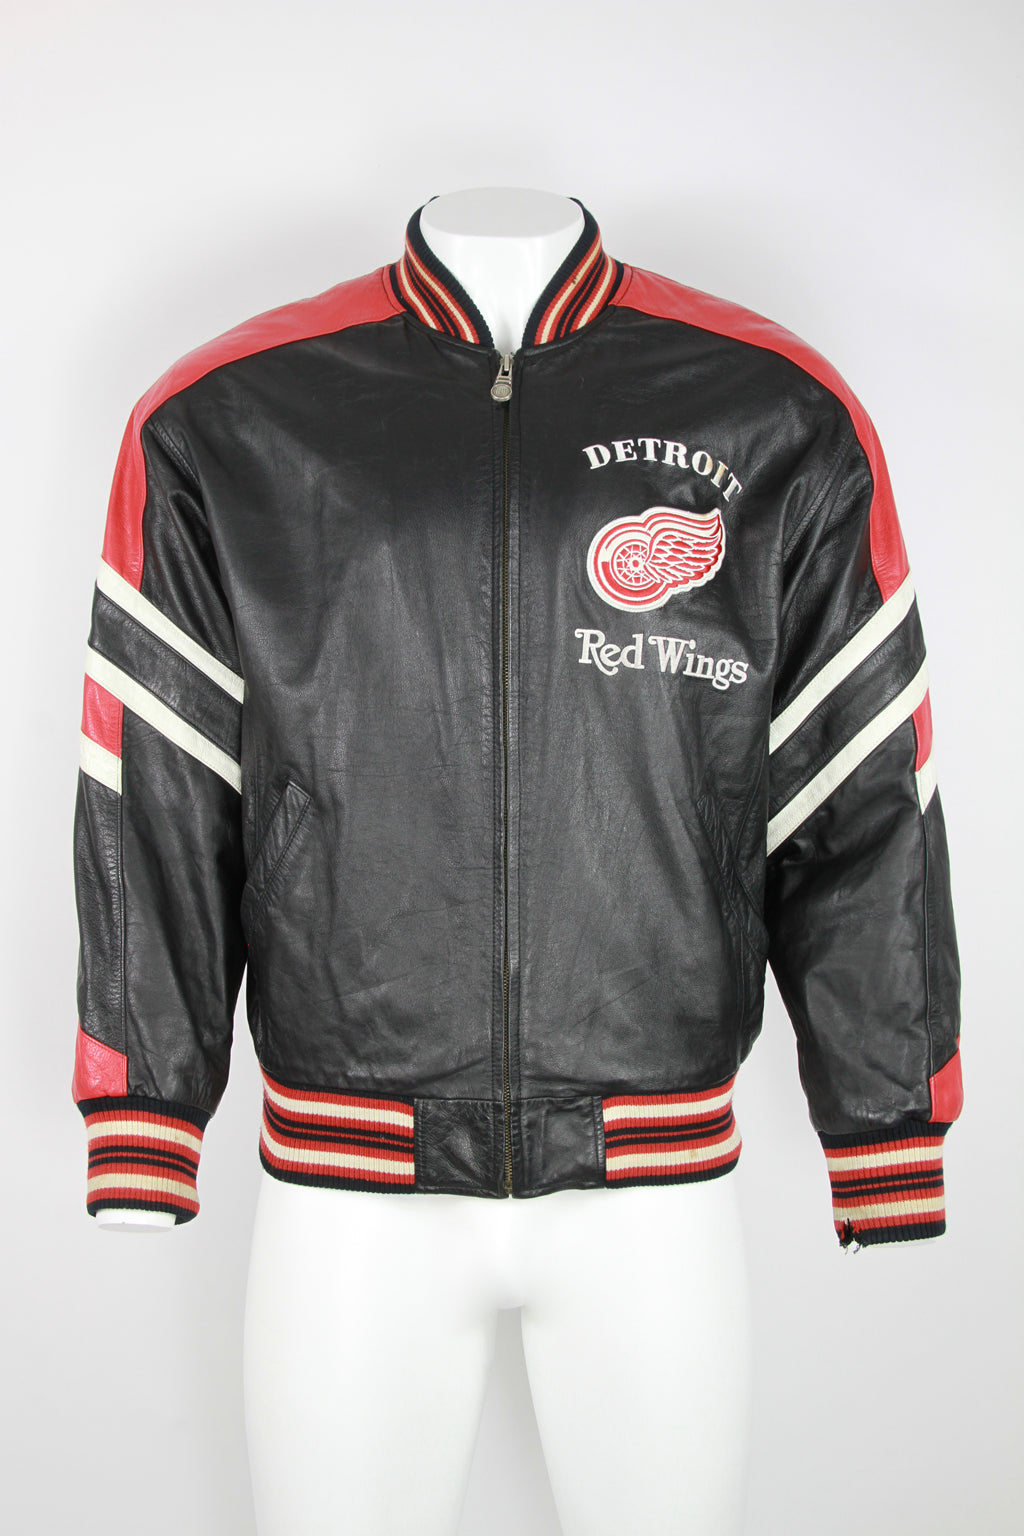 Jackets & Coats, Red Wings Varsity Jacket